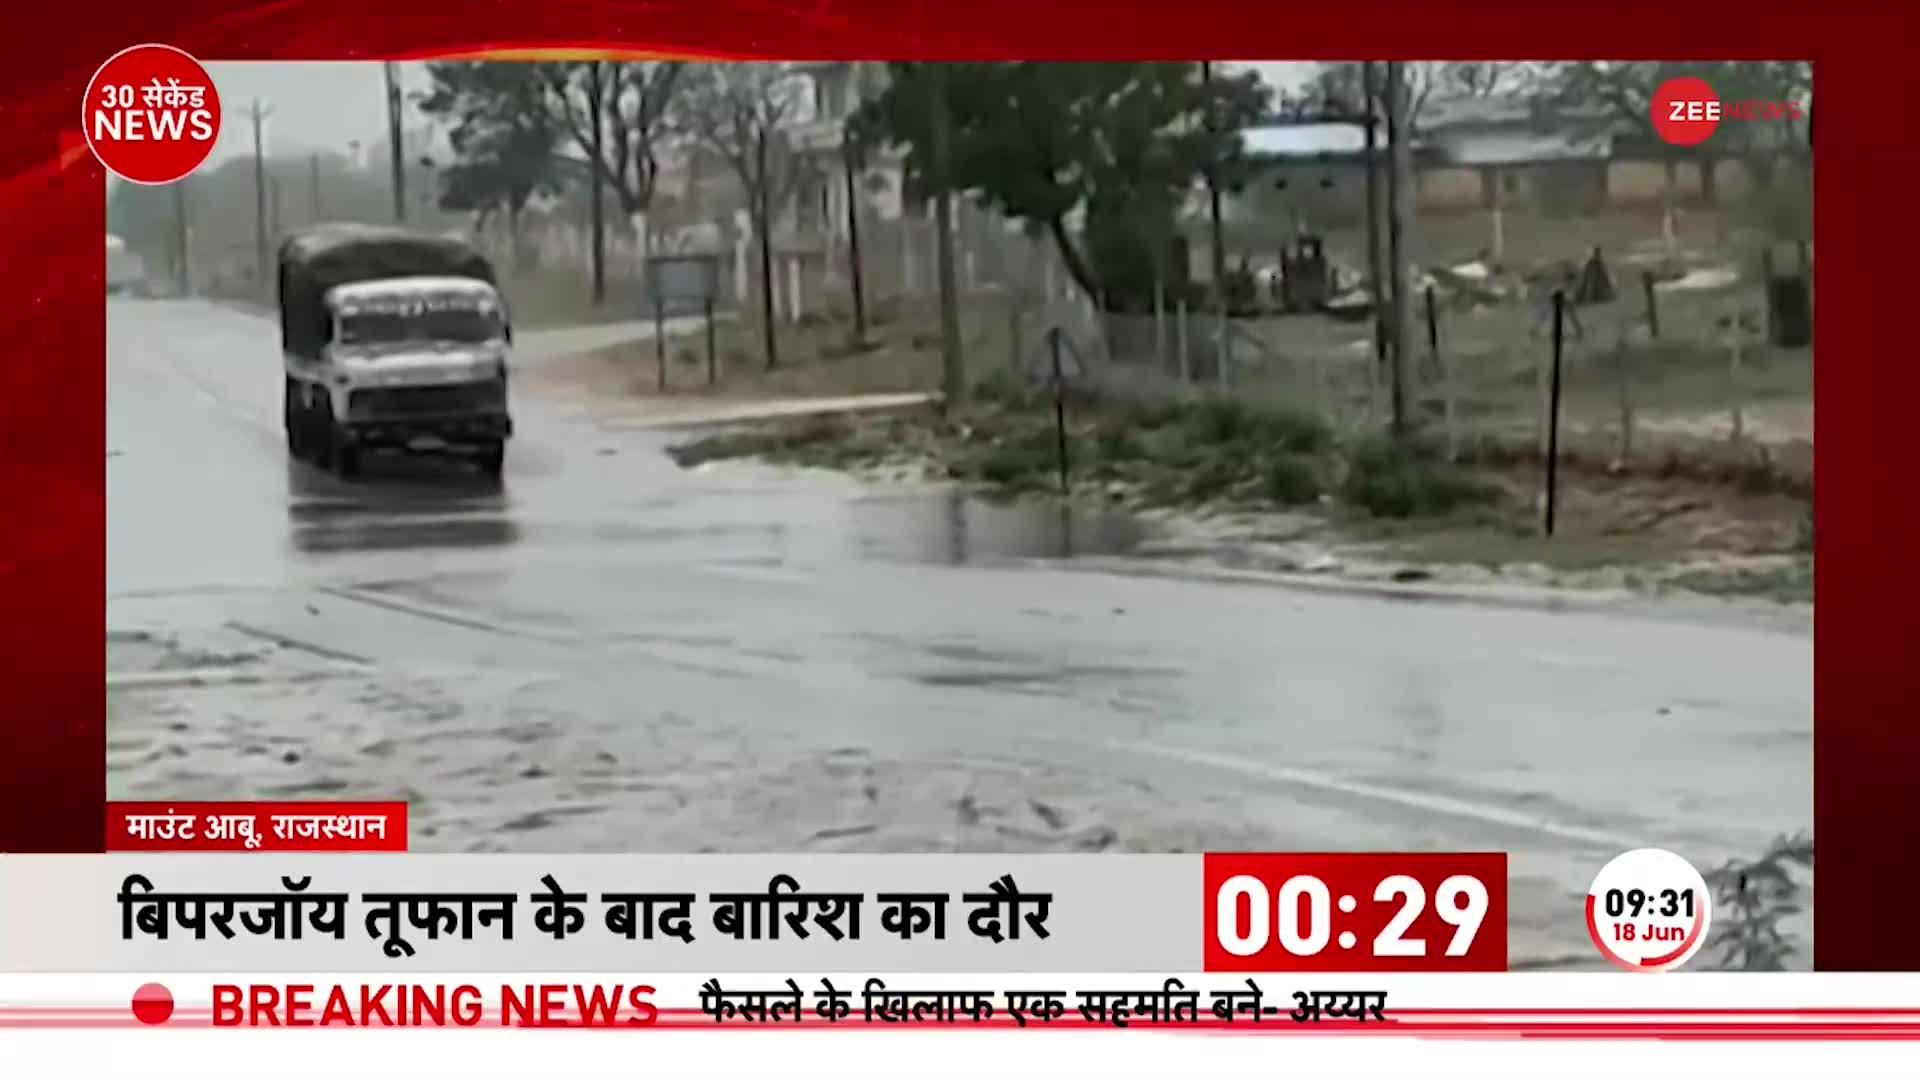 Rajasthan Cyclone Update: Biporjoy से जगह-जगह गिरे पेड़, चारों तरफ भरा पानी